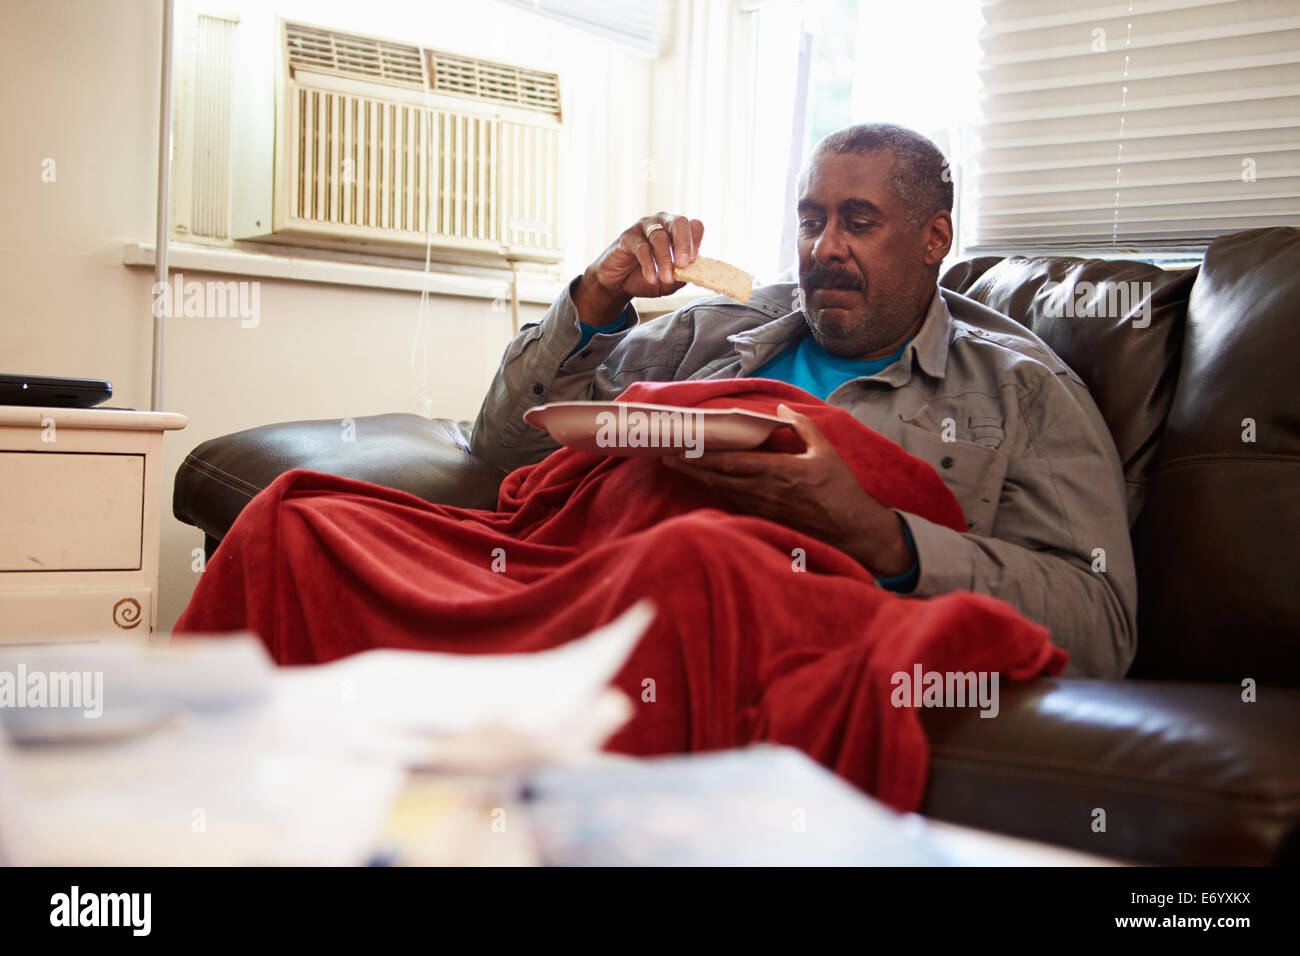 Hombre senior con una dieta deficiente mantenimiento bajo una manta cálida Foto de stock